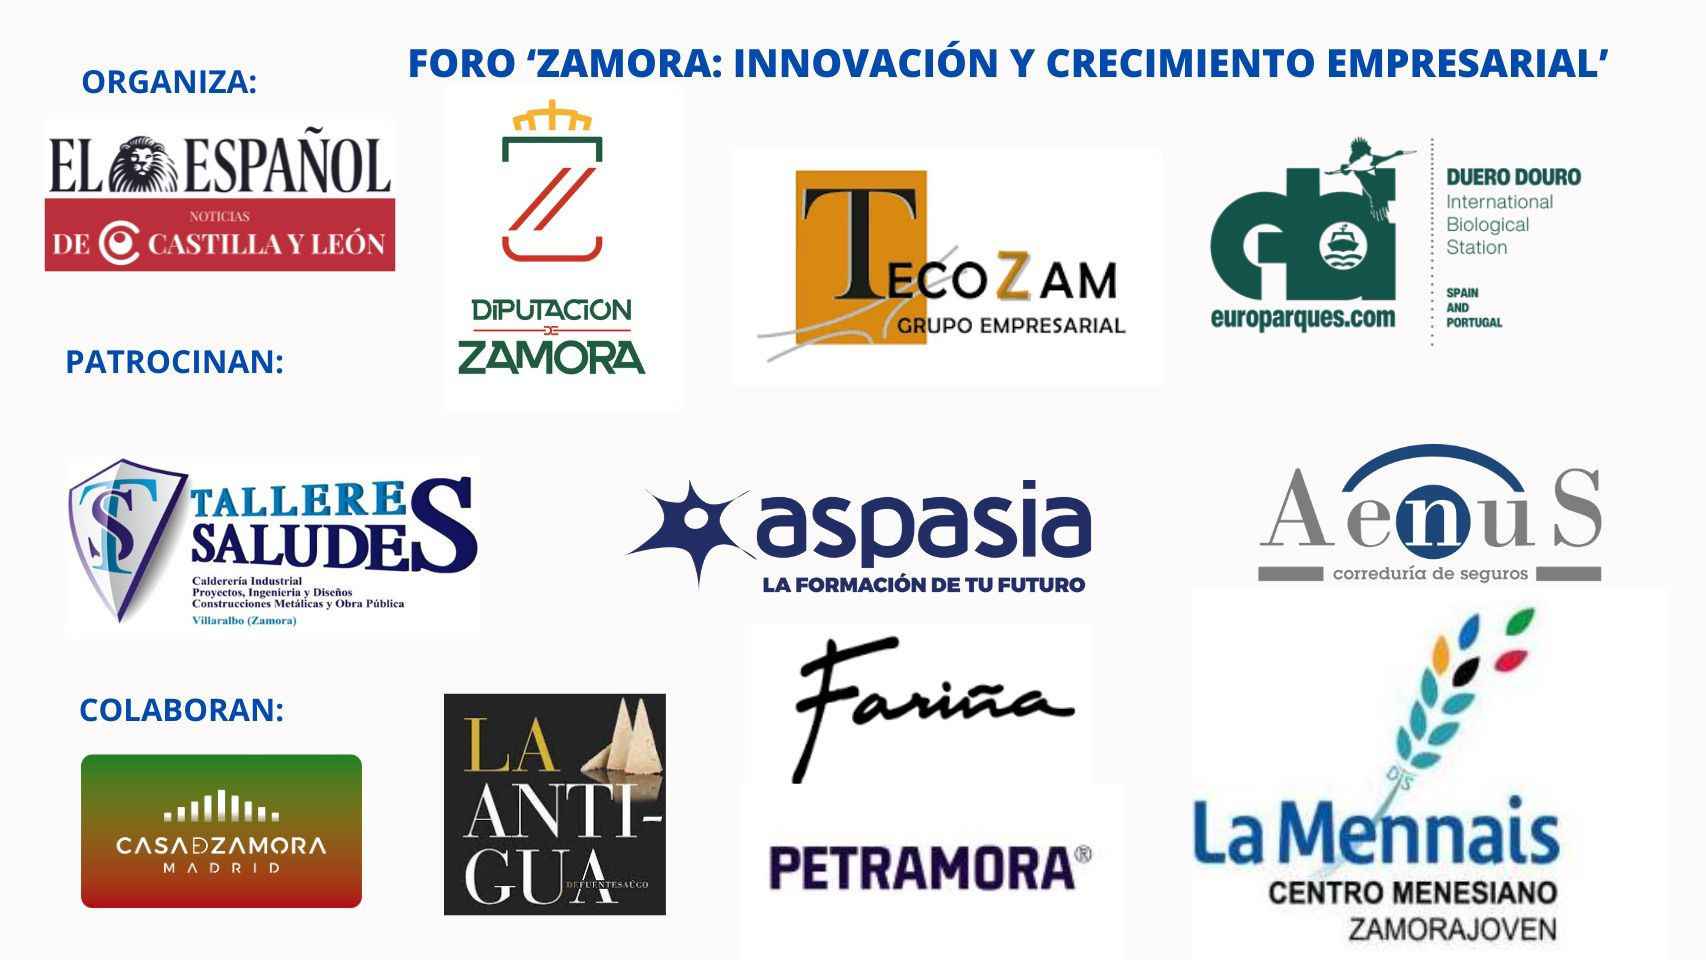 Cartel con los patrocinadores del Foro 'Zamora: innovación y crecimiento empresarial'.